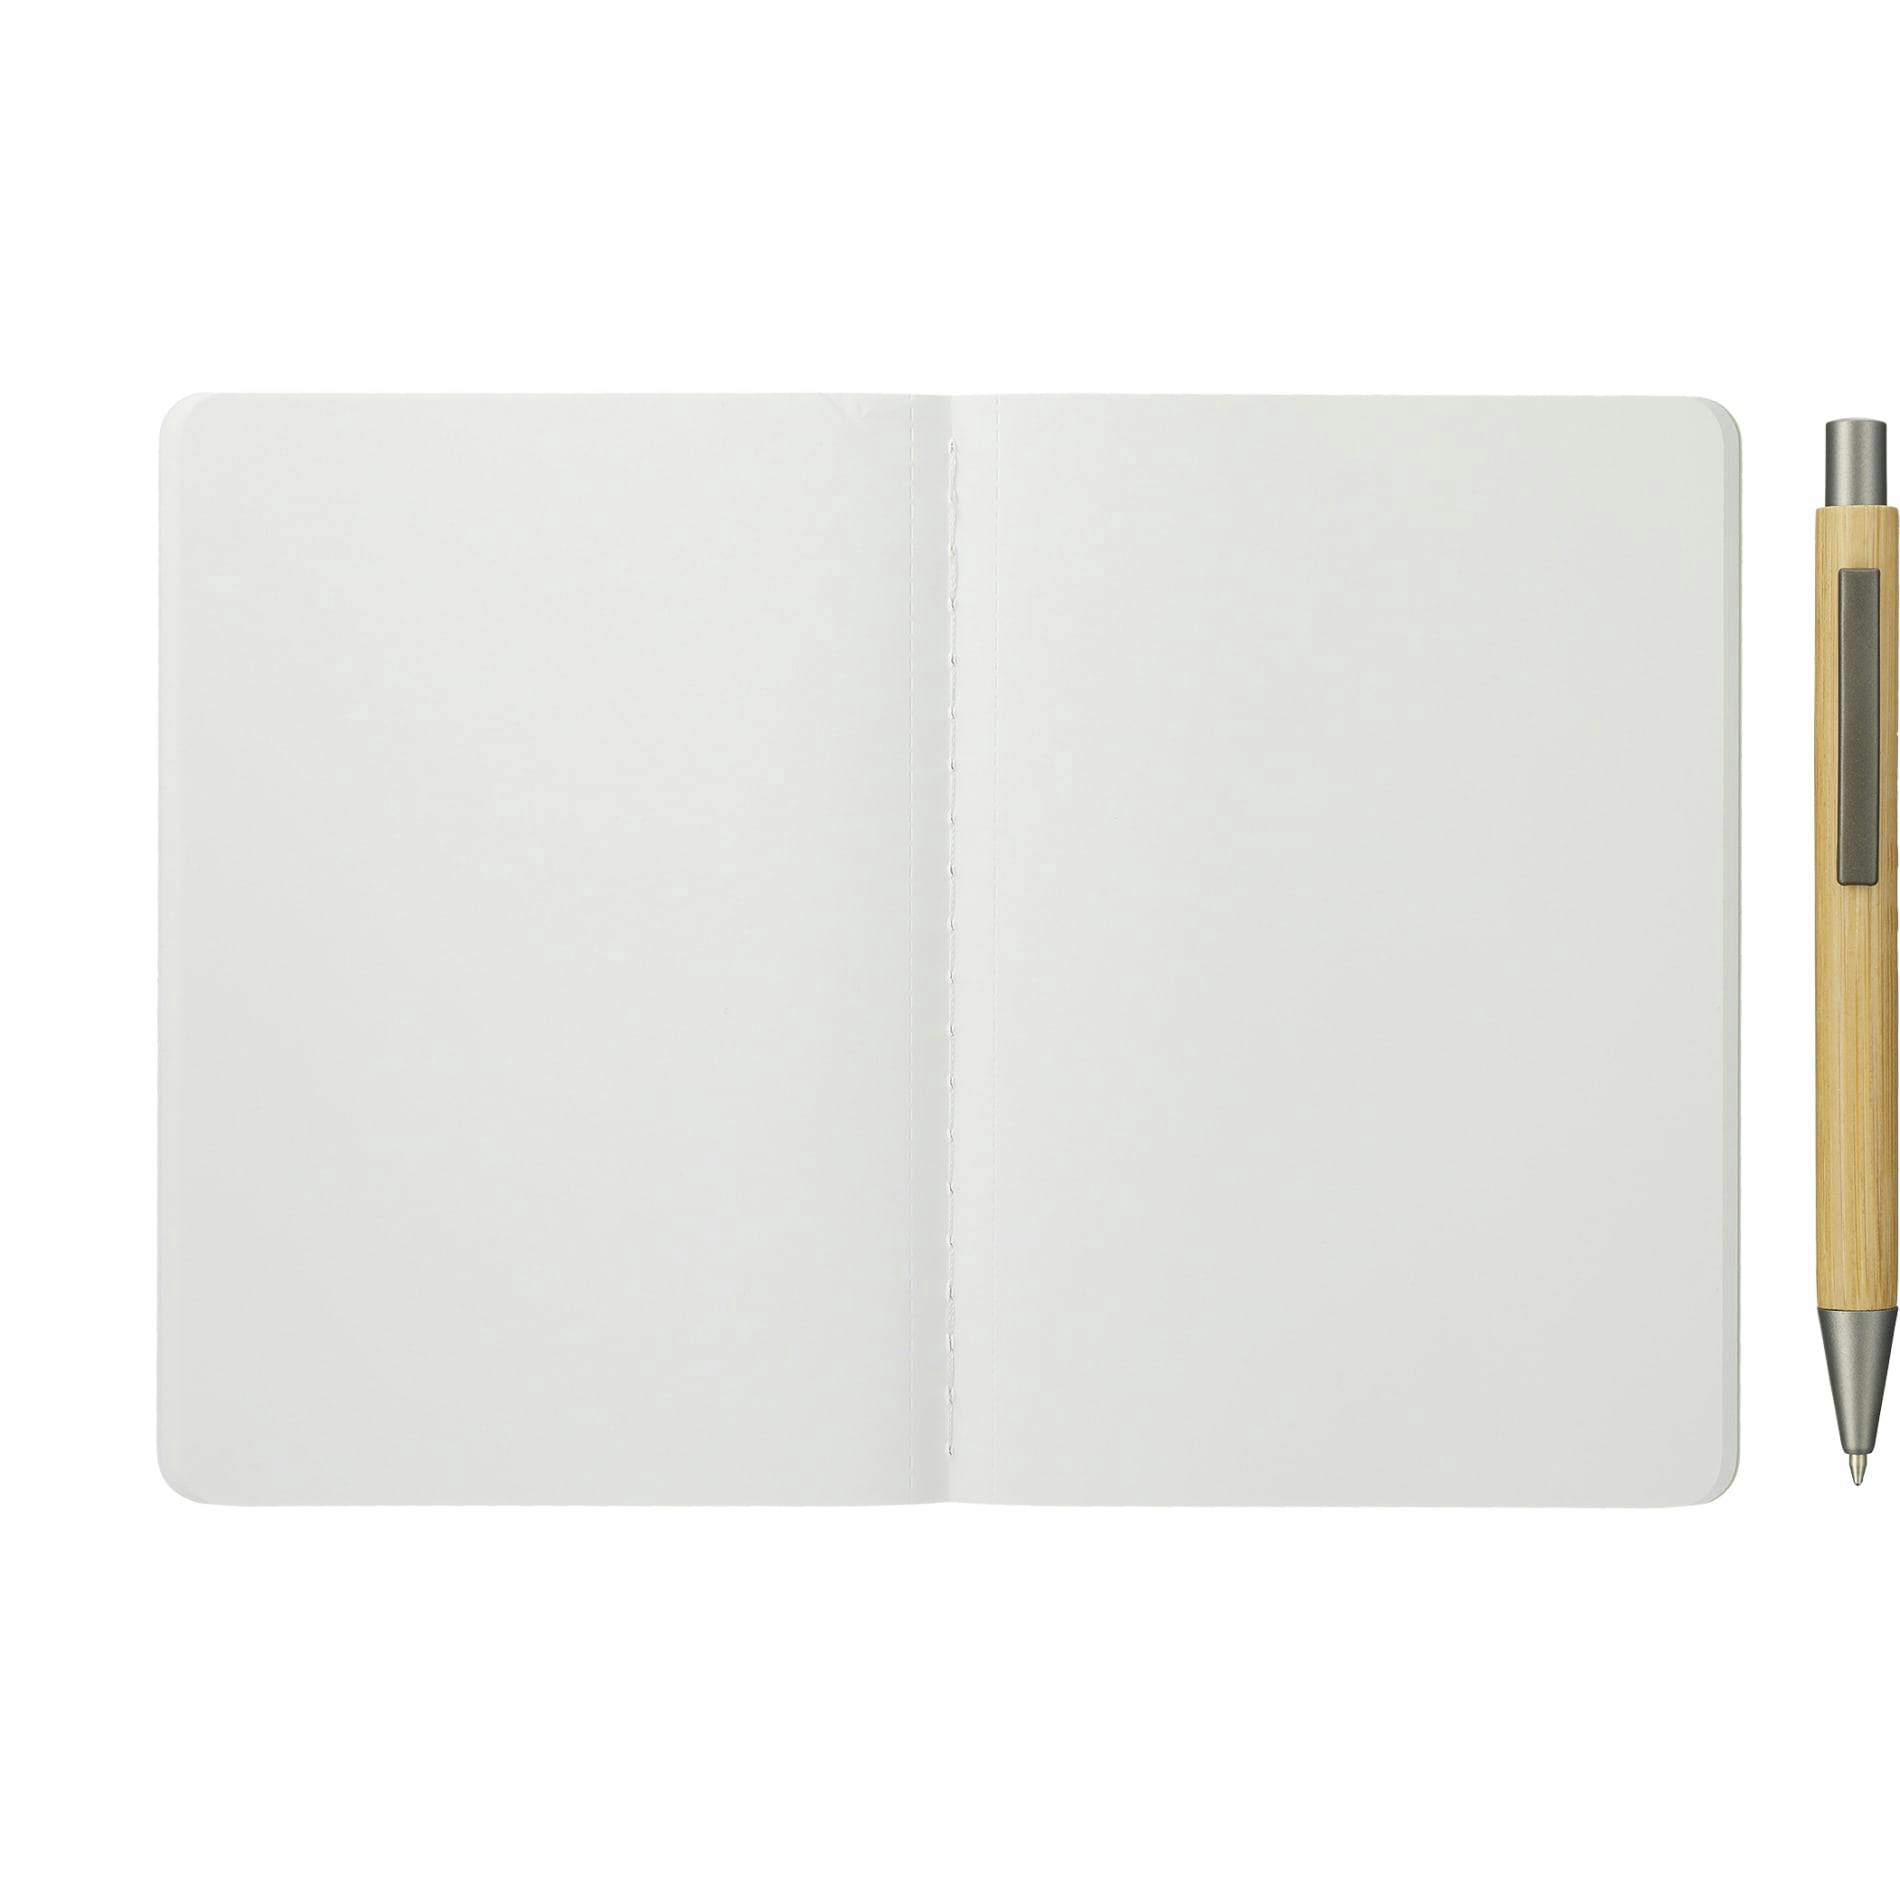 Karst Pocket Stone Paper Notebook - additional Image 2